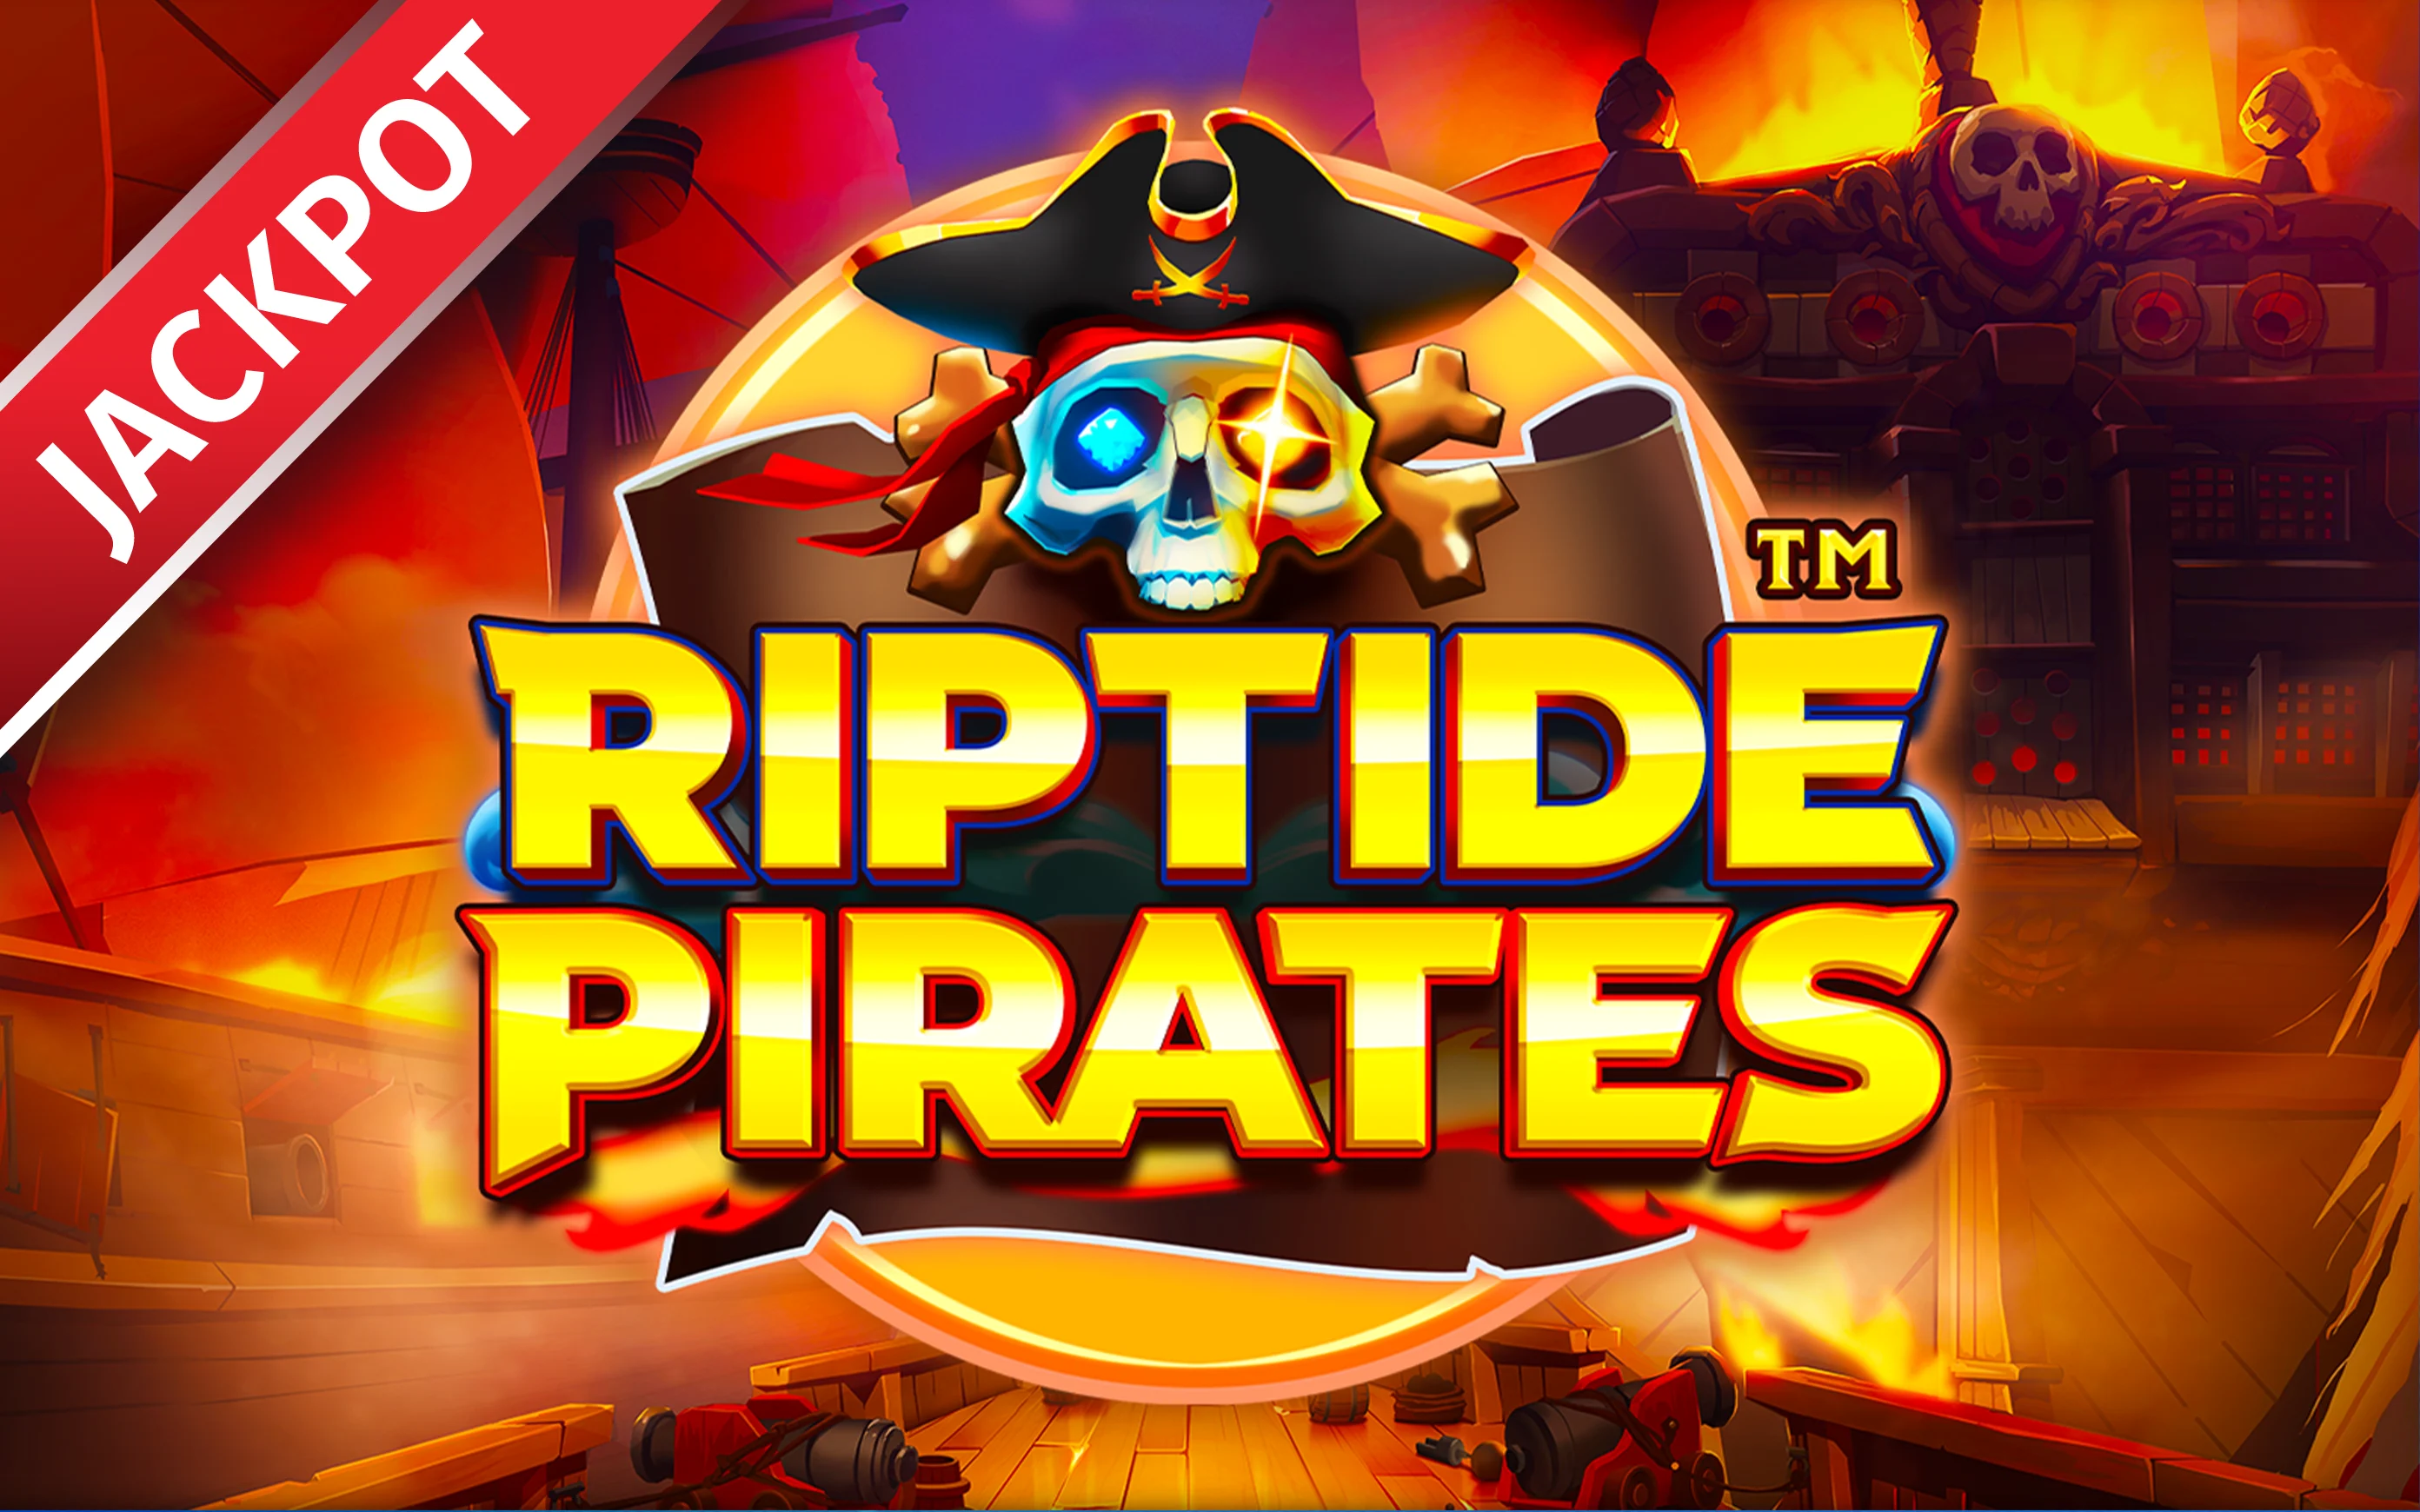 Jouer à Riptide Pirates™ sur le casino en ligne Starcasino.be